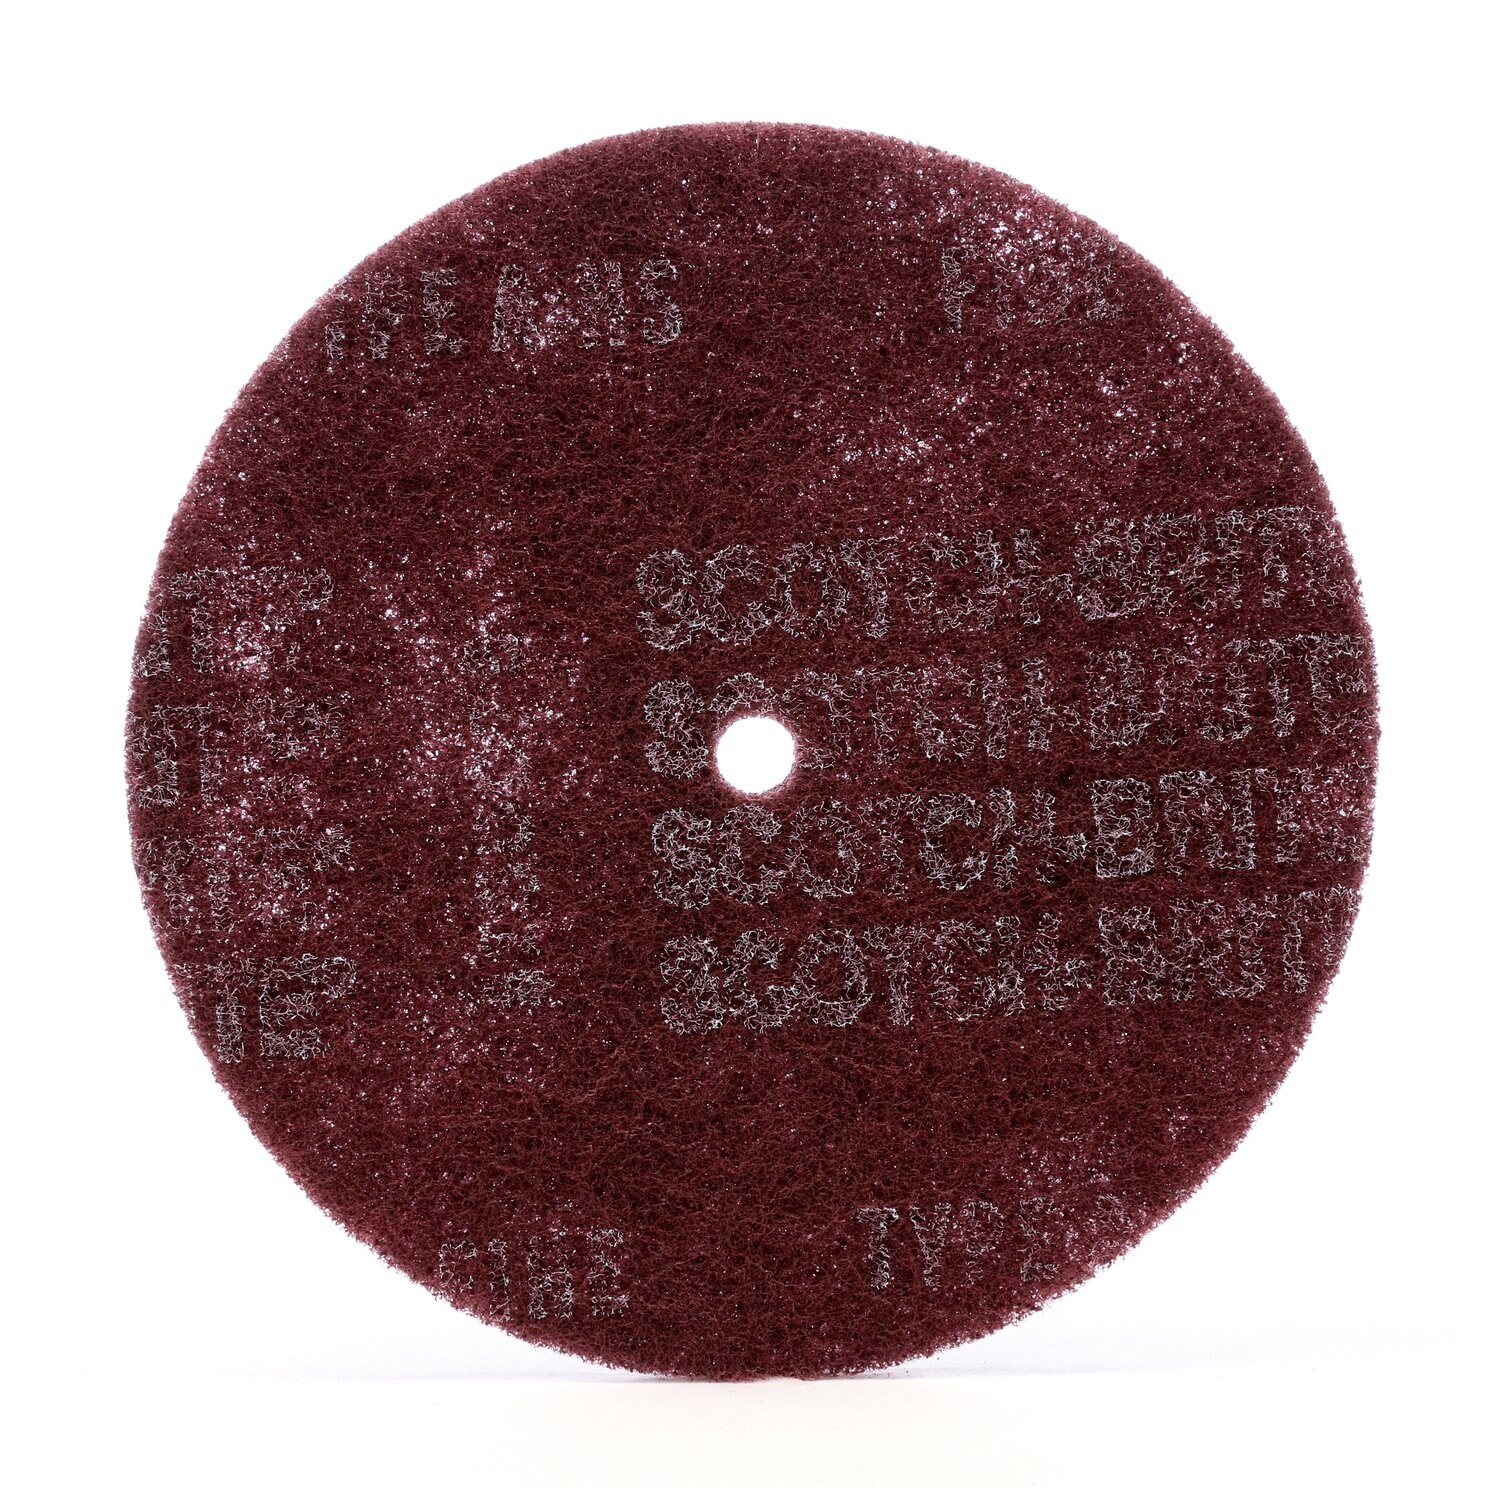 7000120579 - Scotch-Brite High Strength Disc, HS-DC, A/O Medium, 3 in x 1/4 in, 200
ea/Case